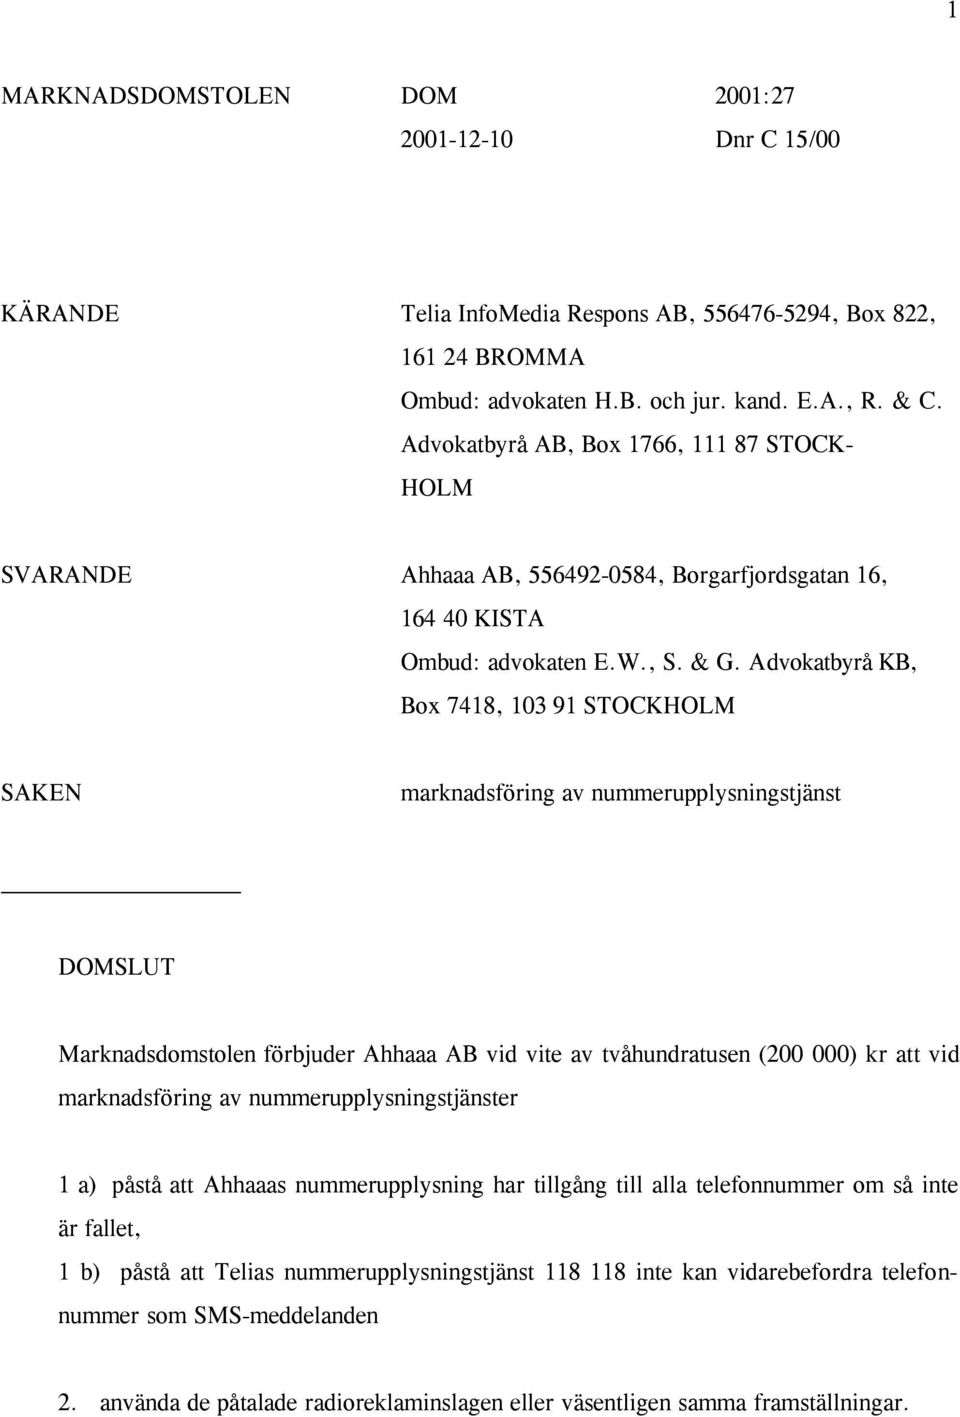 A dvokatbyrå KB, Box 7418, 103 91 STOCKHOLM SAKEN marknadsföring av nummerupplysningstjänst DOMSLUT Marknadsdomstolen förbjuder Ahhaaa AB vid vite av tvåhundratusen (200 000) kr att vid